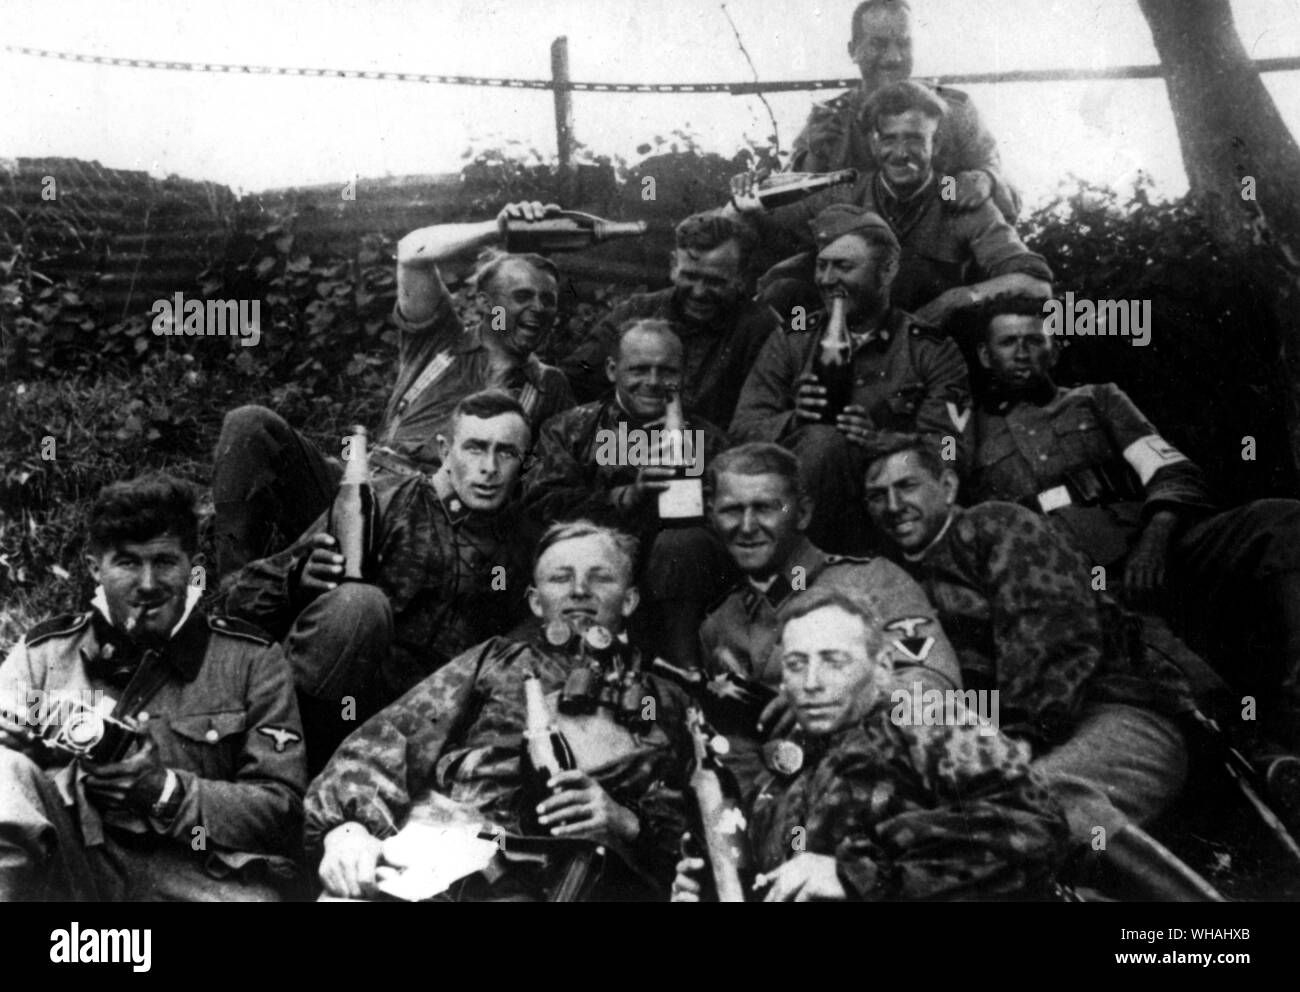 Sul russo battlefront; copia di snapshot trovate sul corpo del soldato nazista che mostra i membri di invasione delle forze durante i primi giorni di attacco in URSS (in SS Album, boozy tedeschi sventolando bottiglie!) Foto Stock